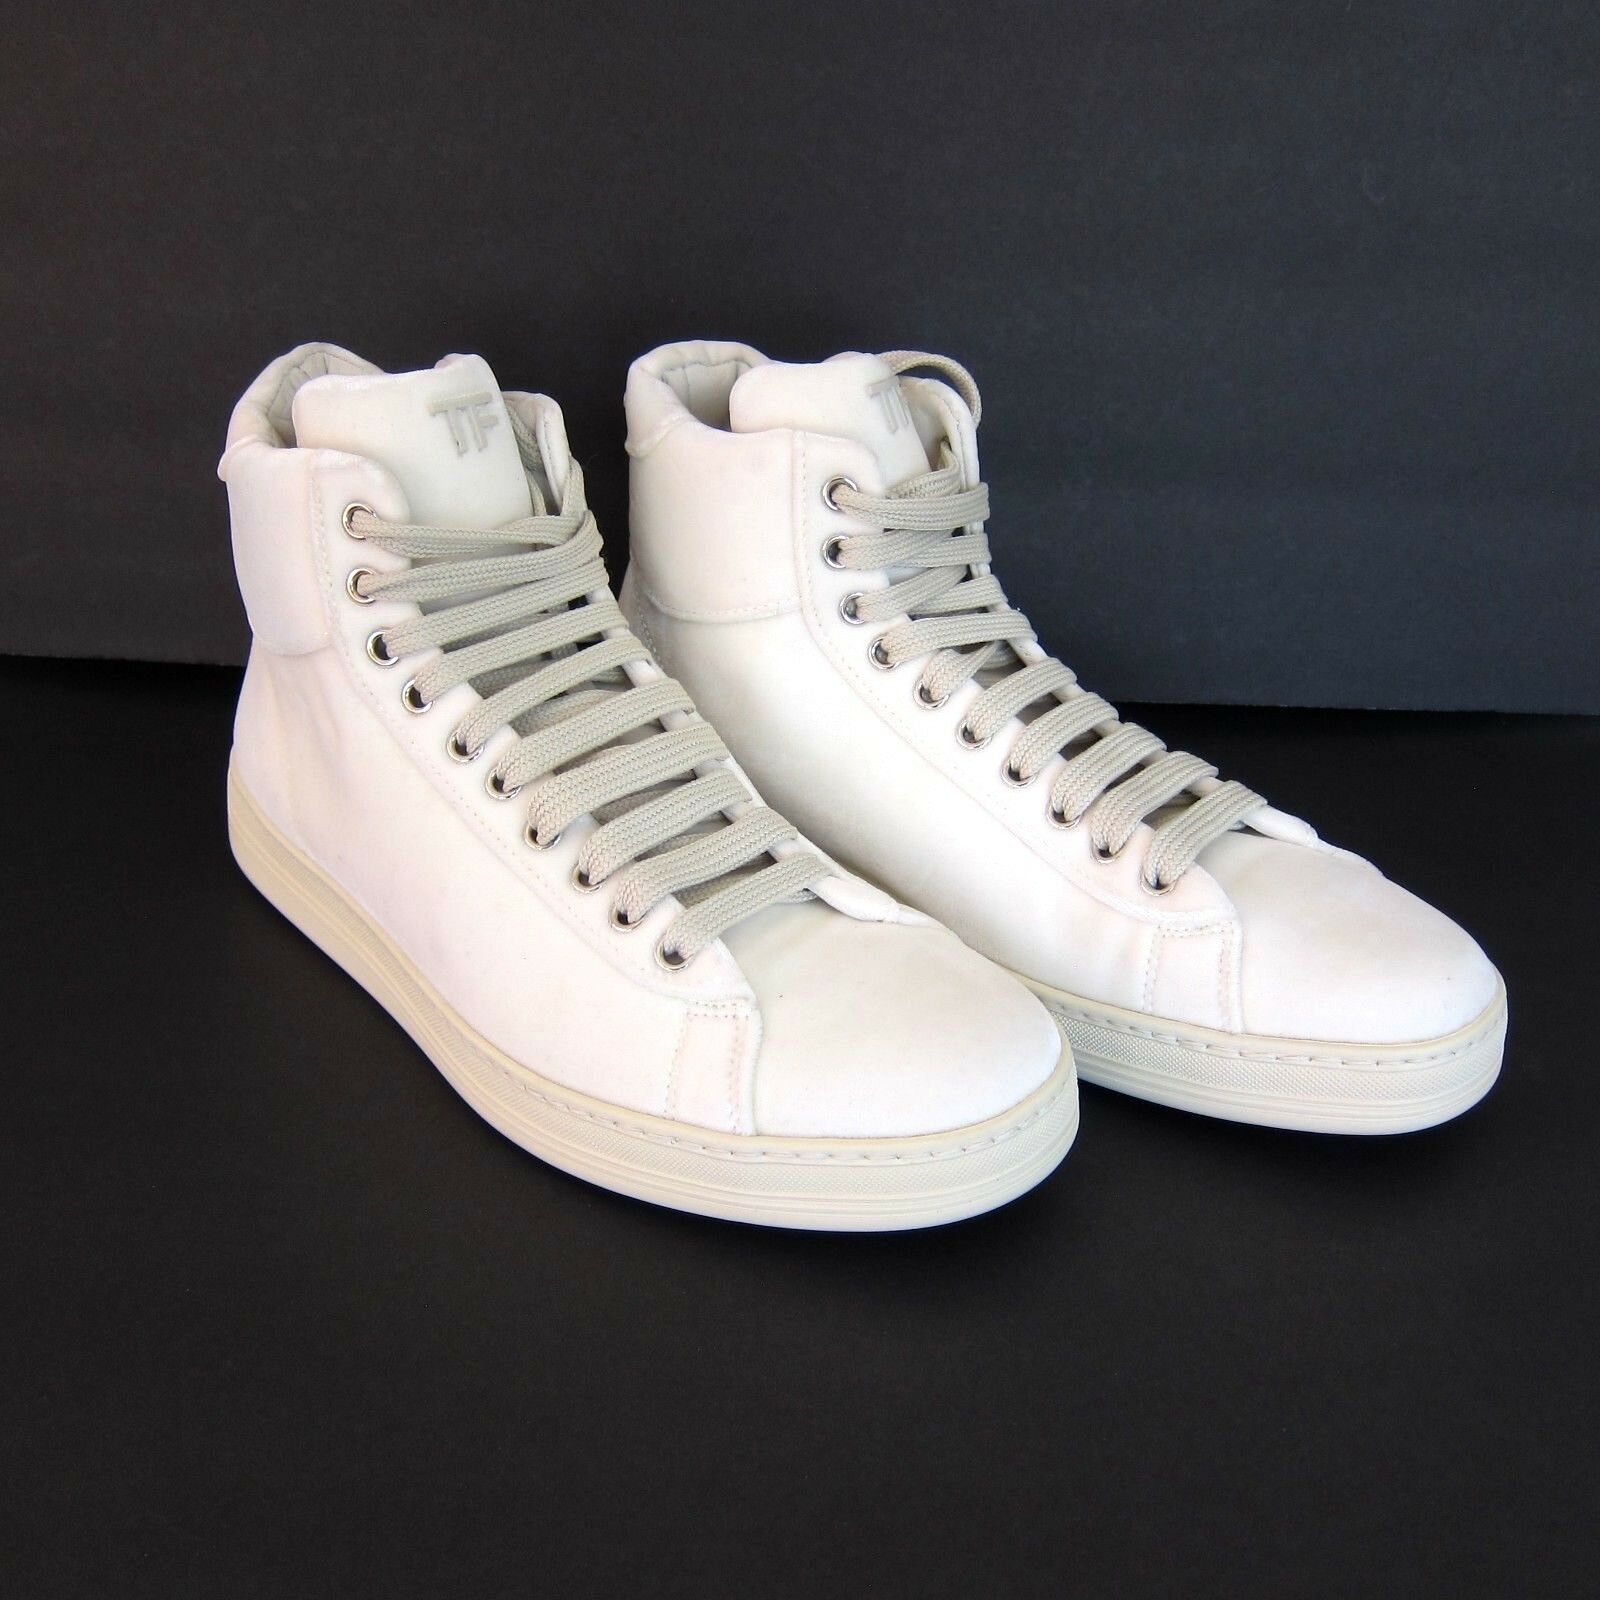 J-3189131 New Tom Ford White Velvet Leather Sneaker Shoe Sz US 8.5 ...